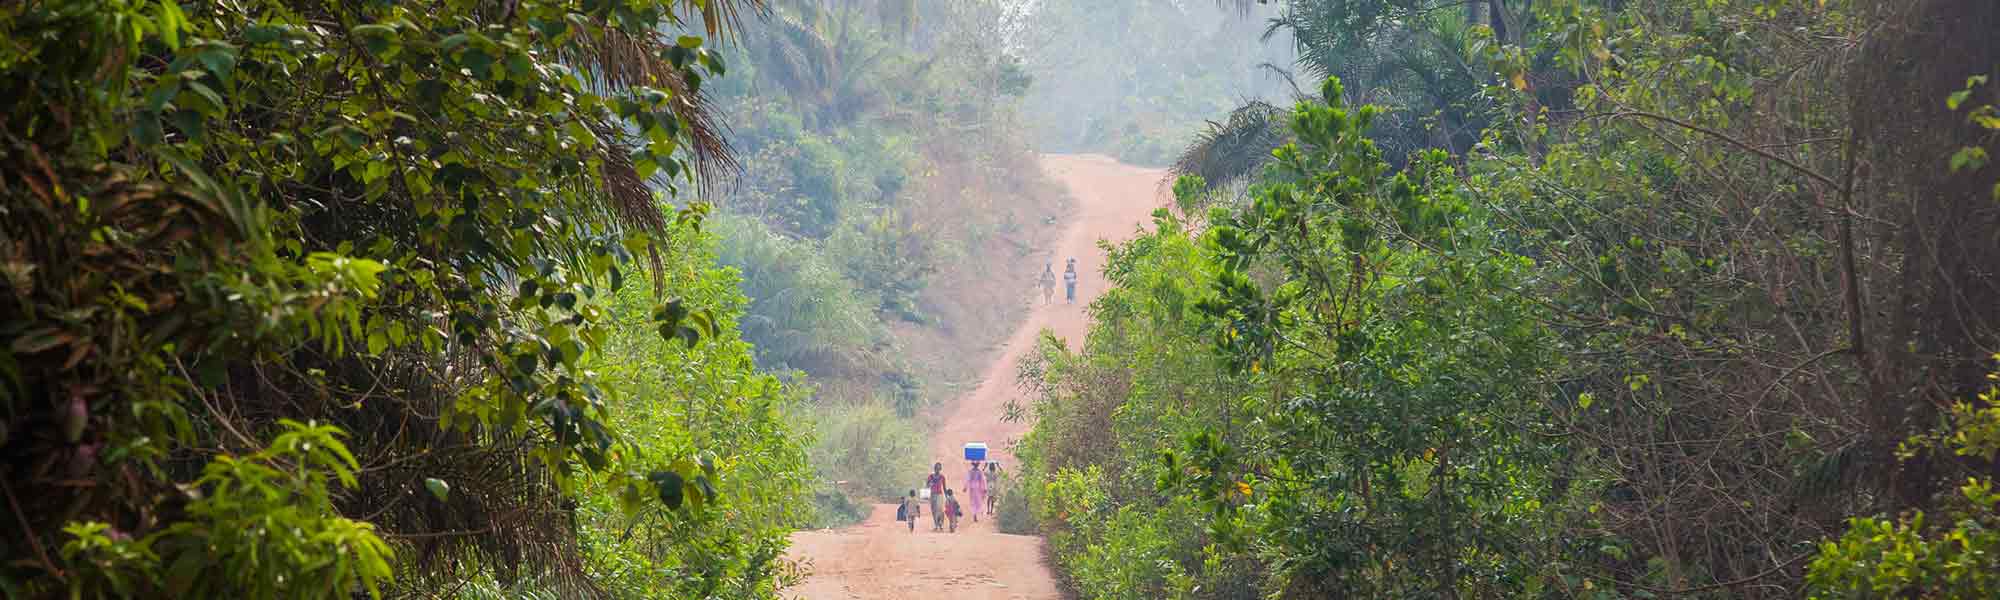 Mennesker på vei i grønnt landskap i Guinea